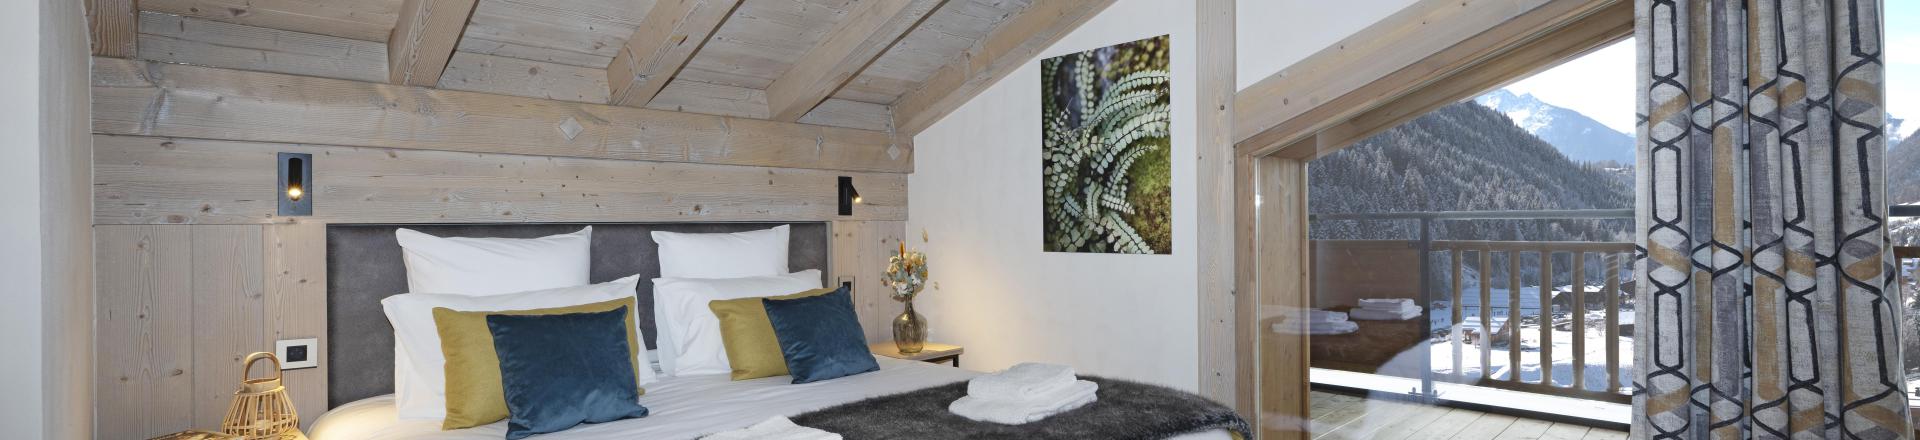 Location au ski Appartement duplex 4 pièces 8 personnes - Résidence les Chalets de Joy - Le Grand Bornand - Chambre mansardée